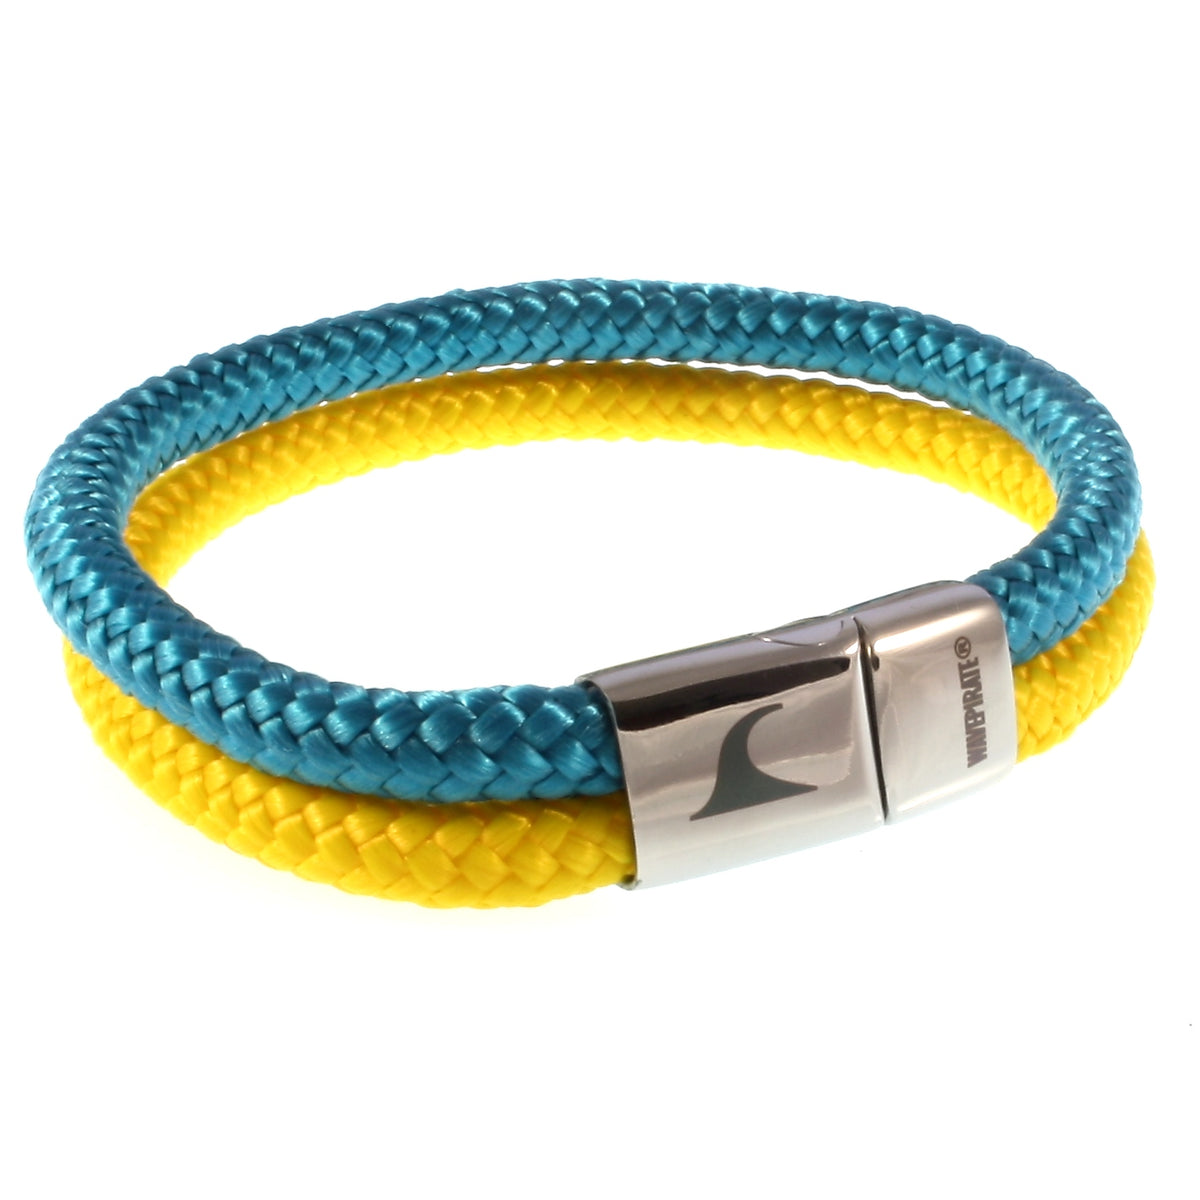 Herren-Segeltau-Armband-Tarifa-blau-gelb-geflochten-Edelstahlverschluss-vorn-wavepirate-shop-st